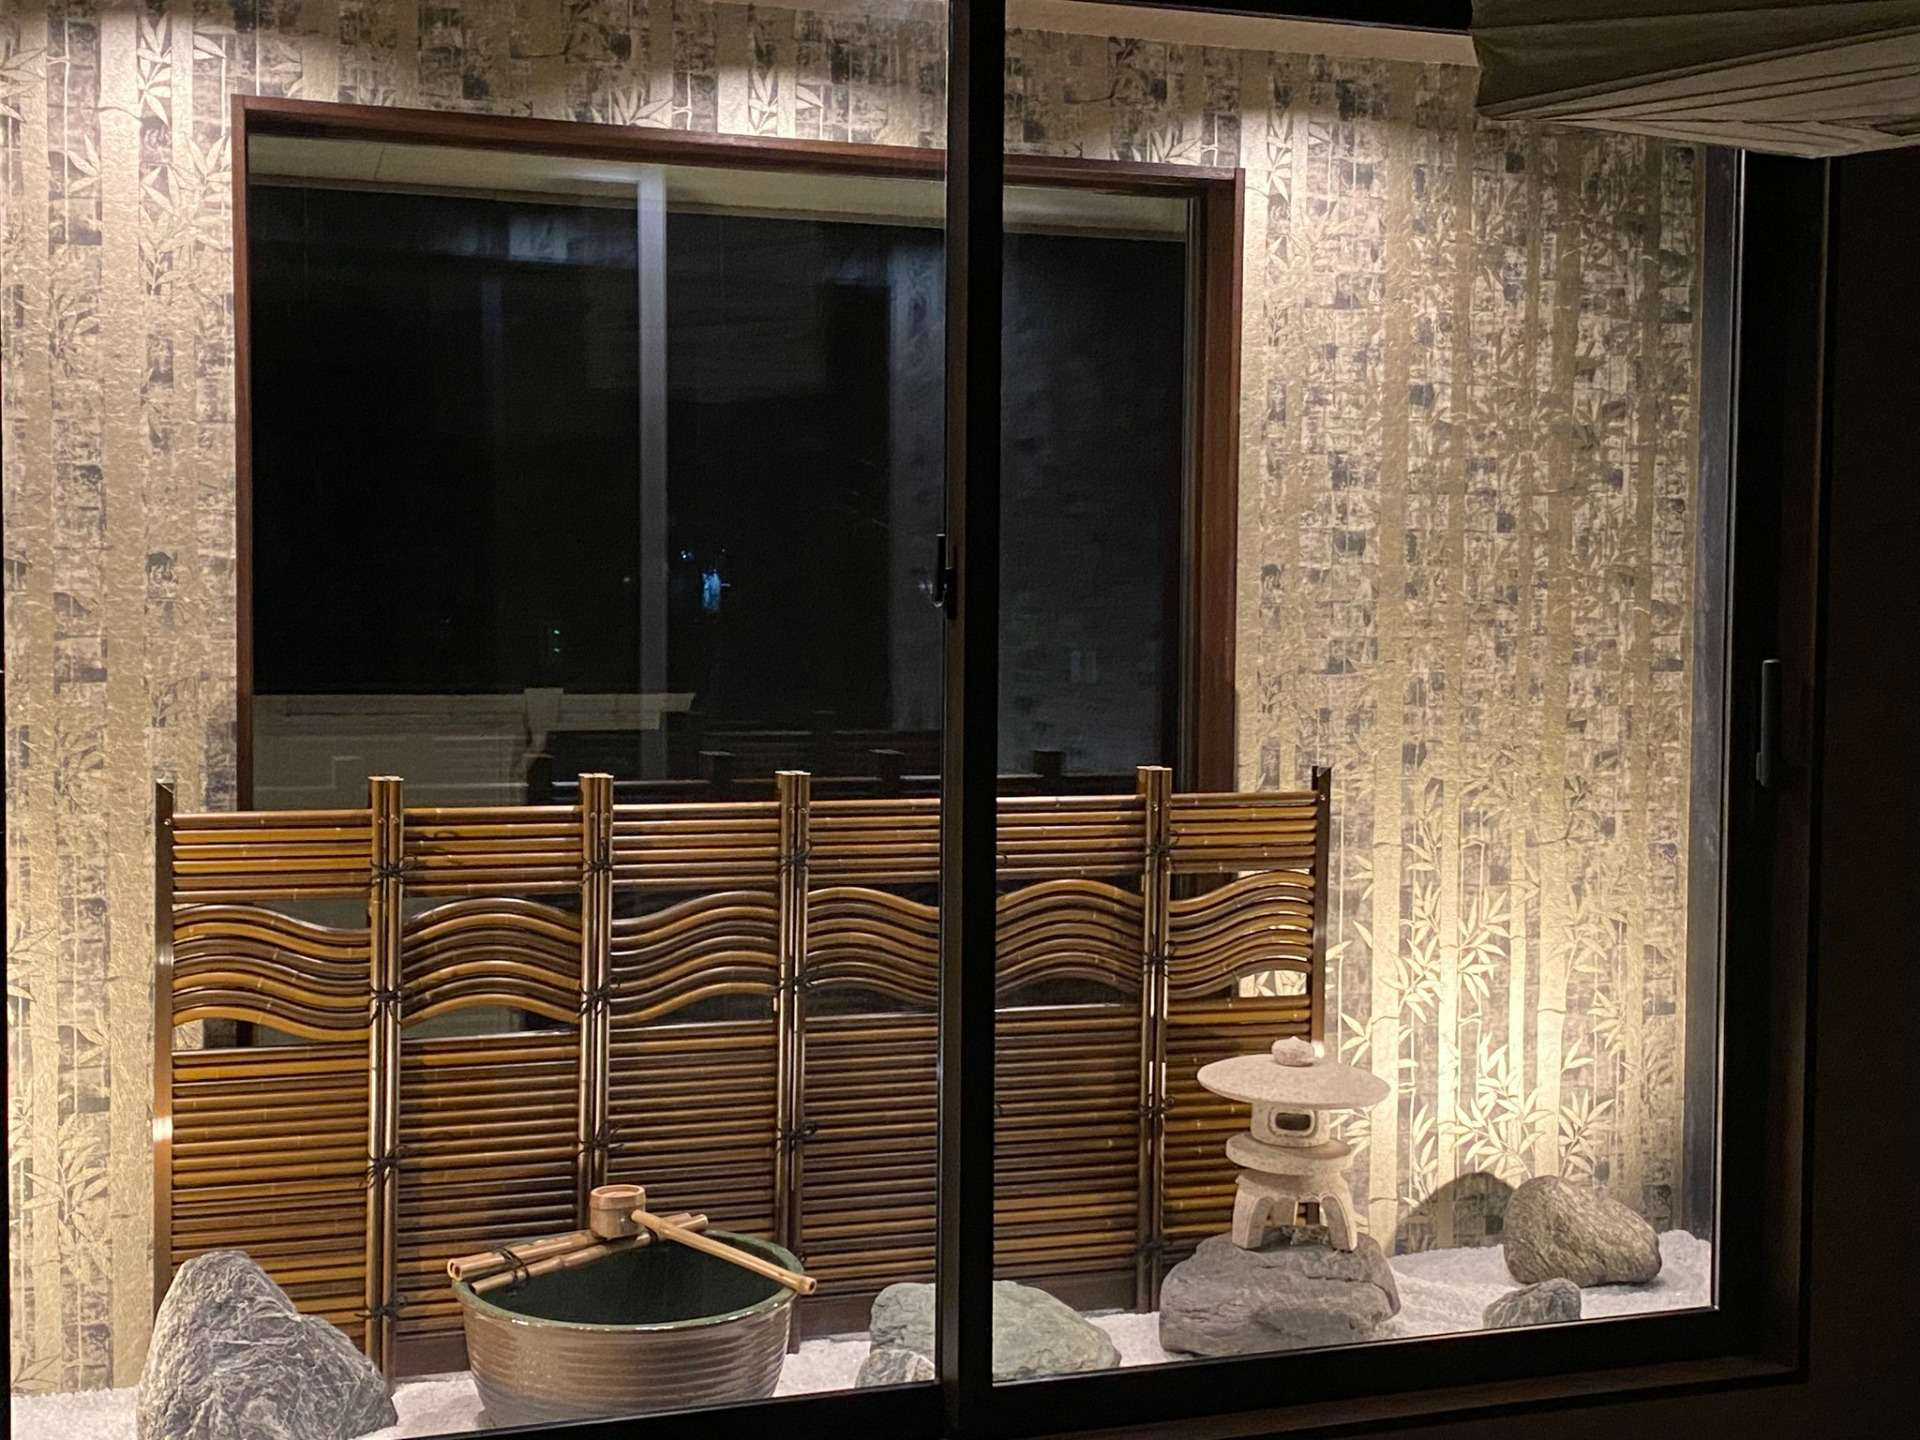 【お家の中に箱庭を🍀】宮崎市で新築・リノベーション| mikiデザインハウス